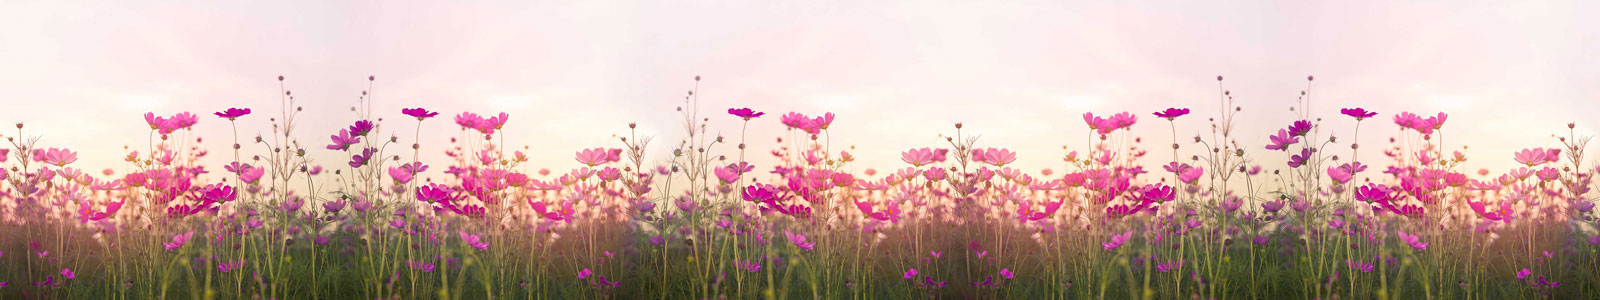 №5706 - Розовые цветы в поле